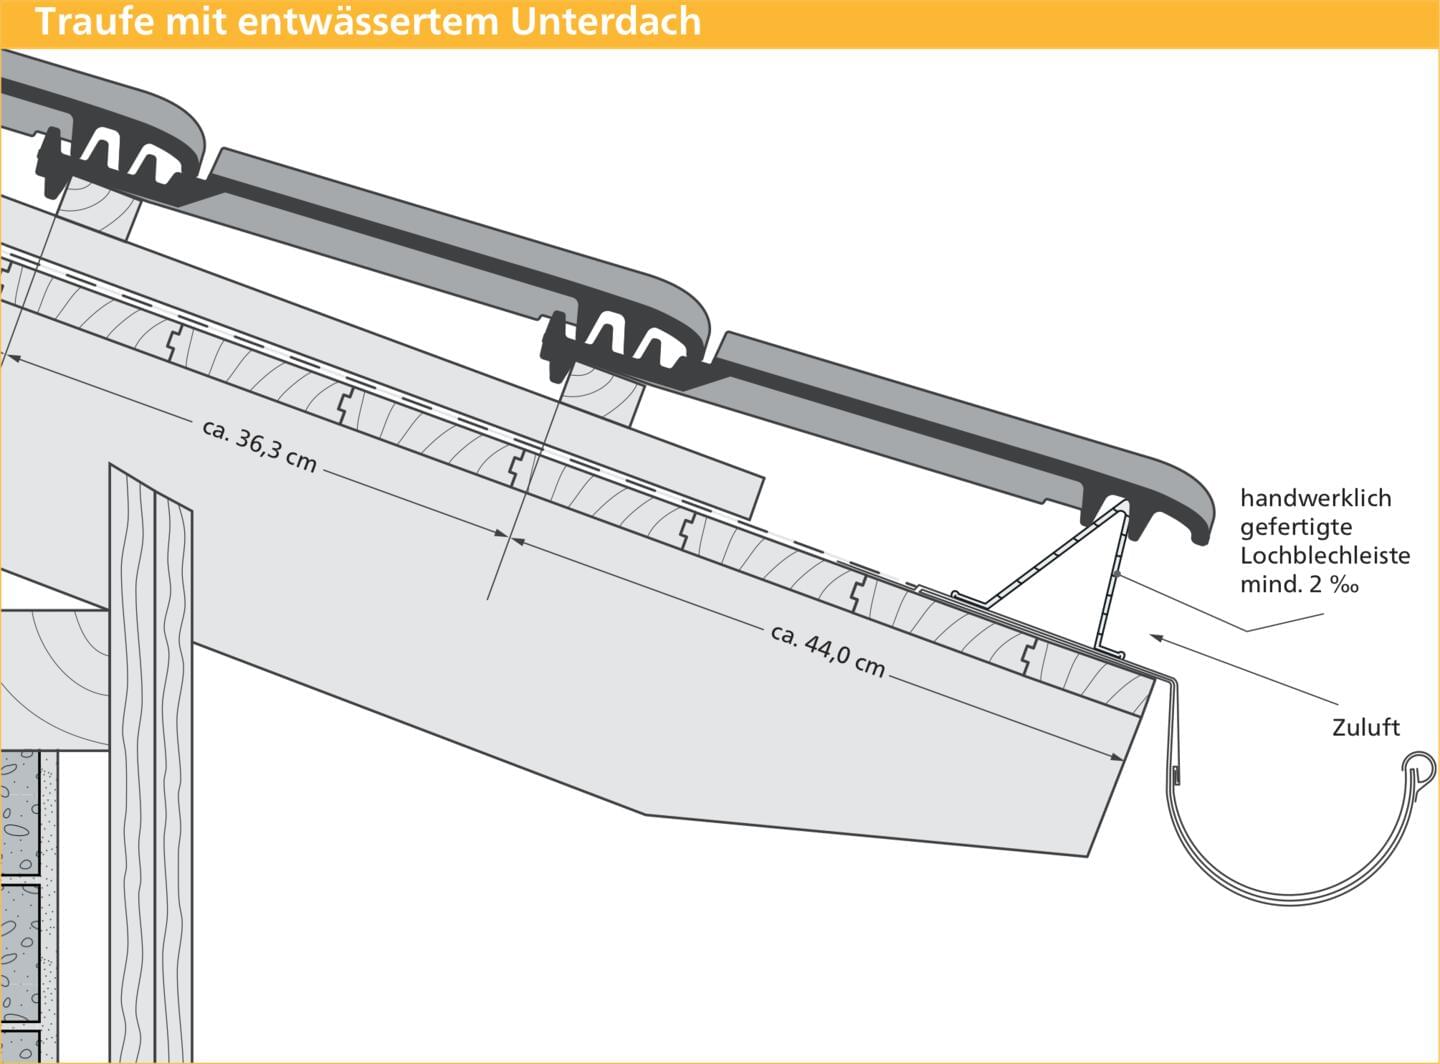 ERLUS Technische Zeichnung E 58 RS® - Traufe mit entwässertem Unterdach | © ERLUS AG 2018